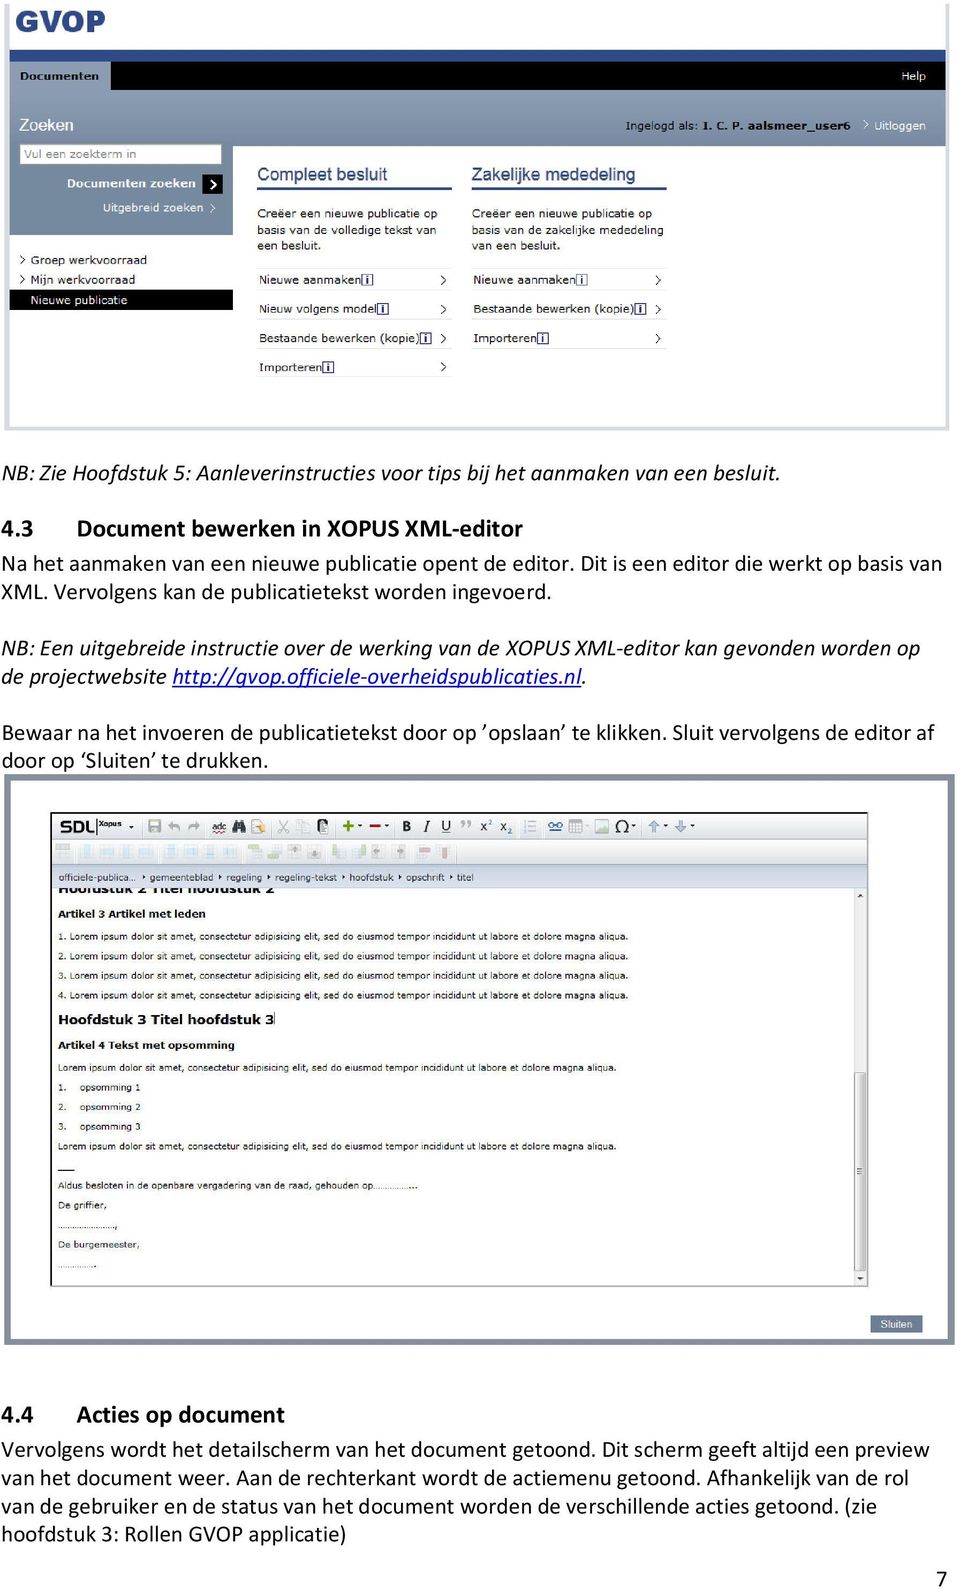 NB: Een uitgebreide instructie over de werking van de XOPUS XML-editor kan gevonden worden op de projectwebsite http://gvop.officiele-overheidspublicaties.nl.